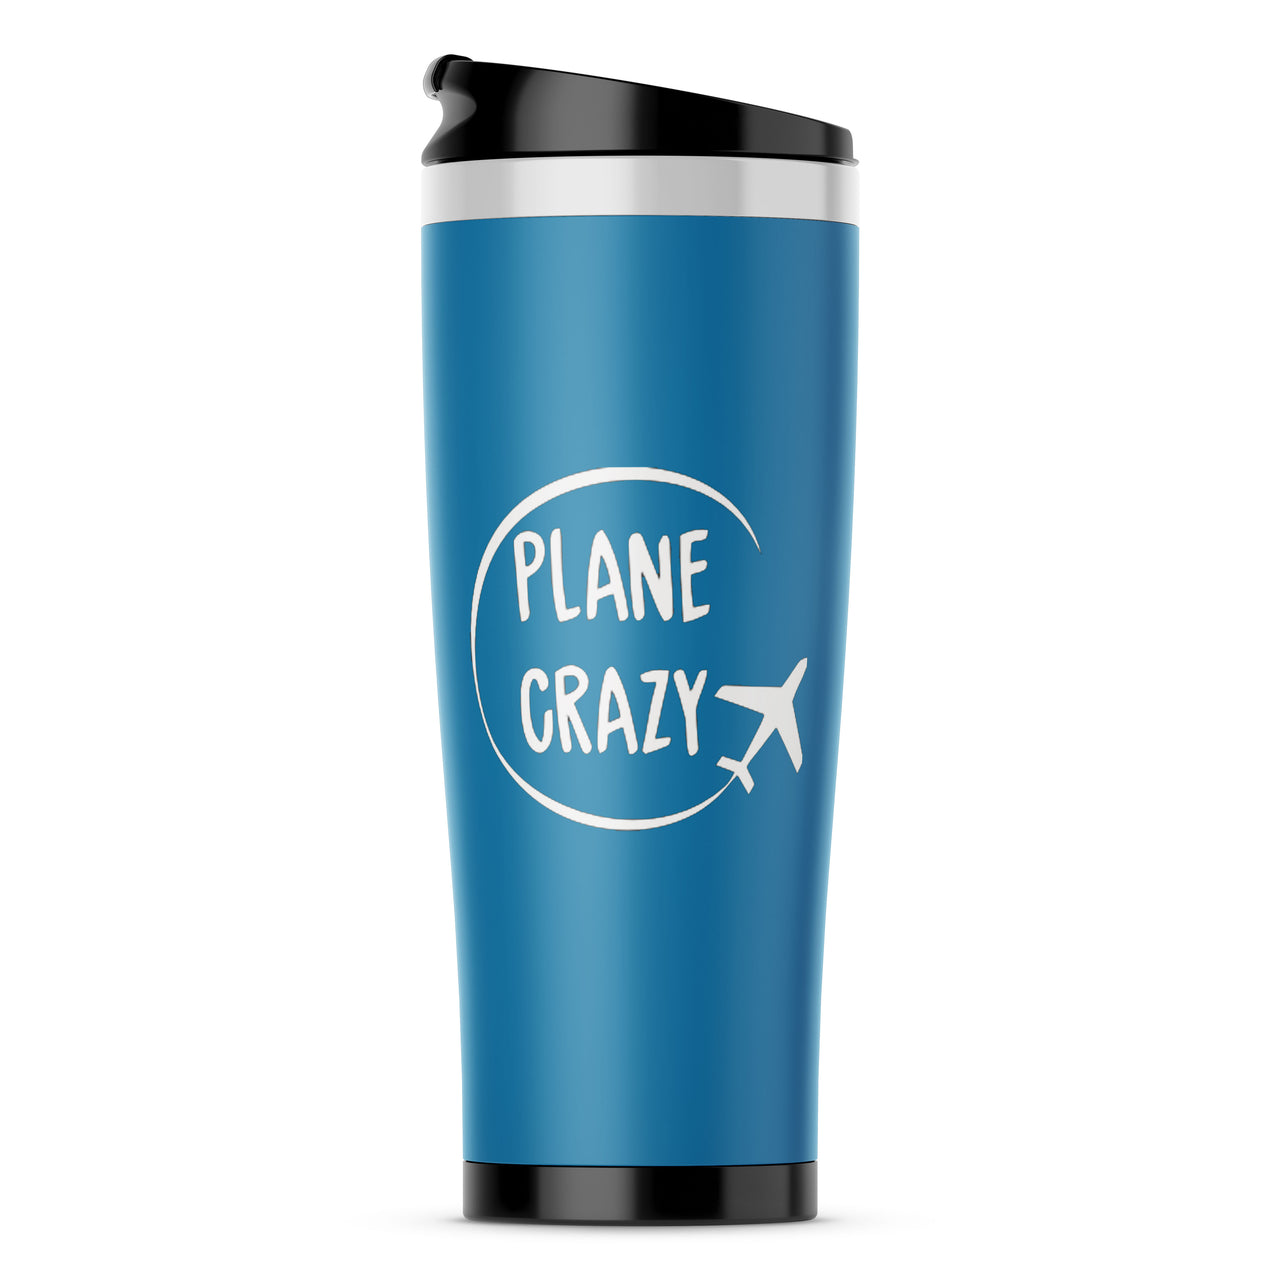 Plane Crazy Designed Travel Mugs